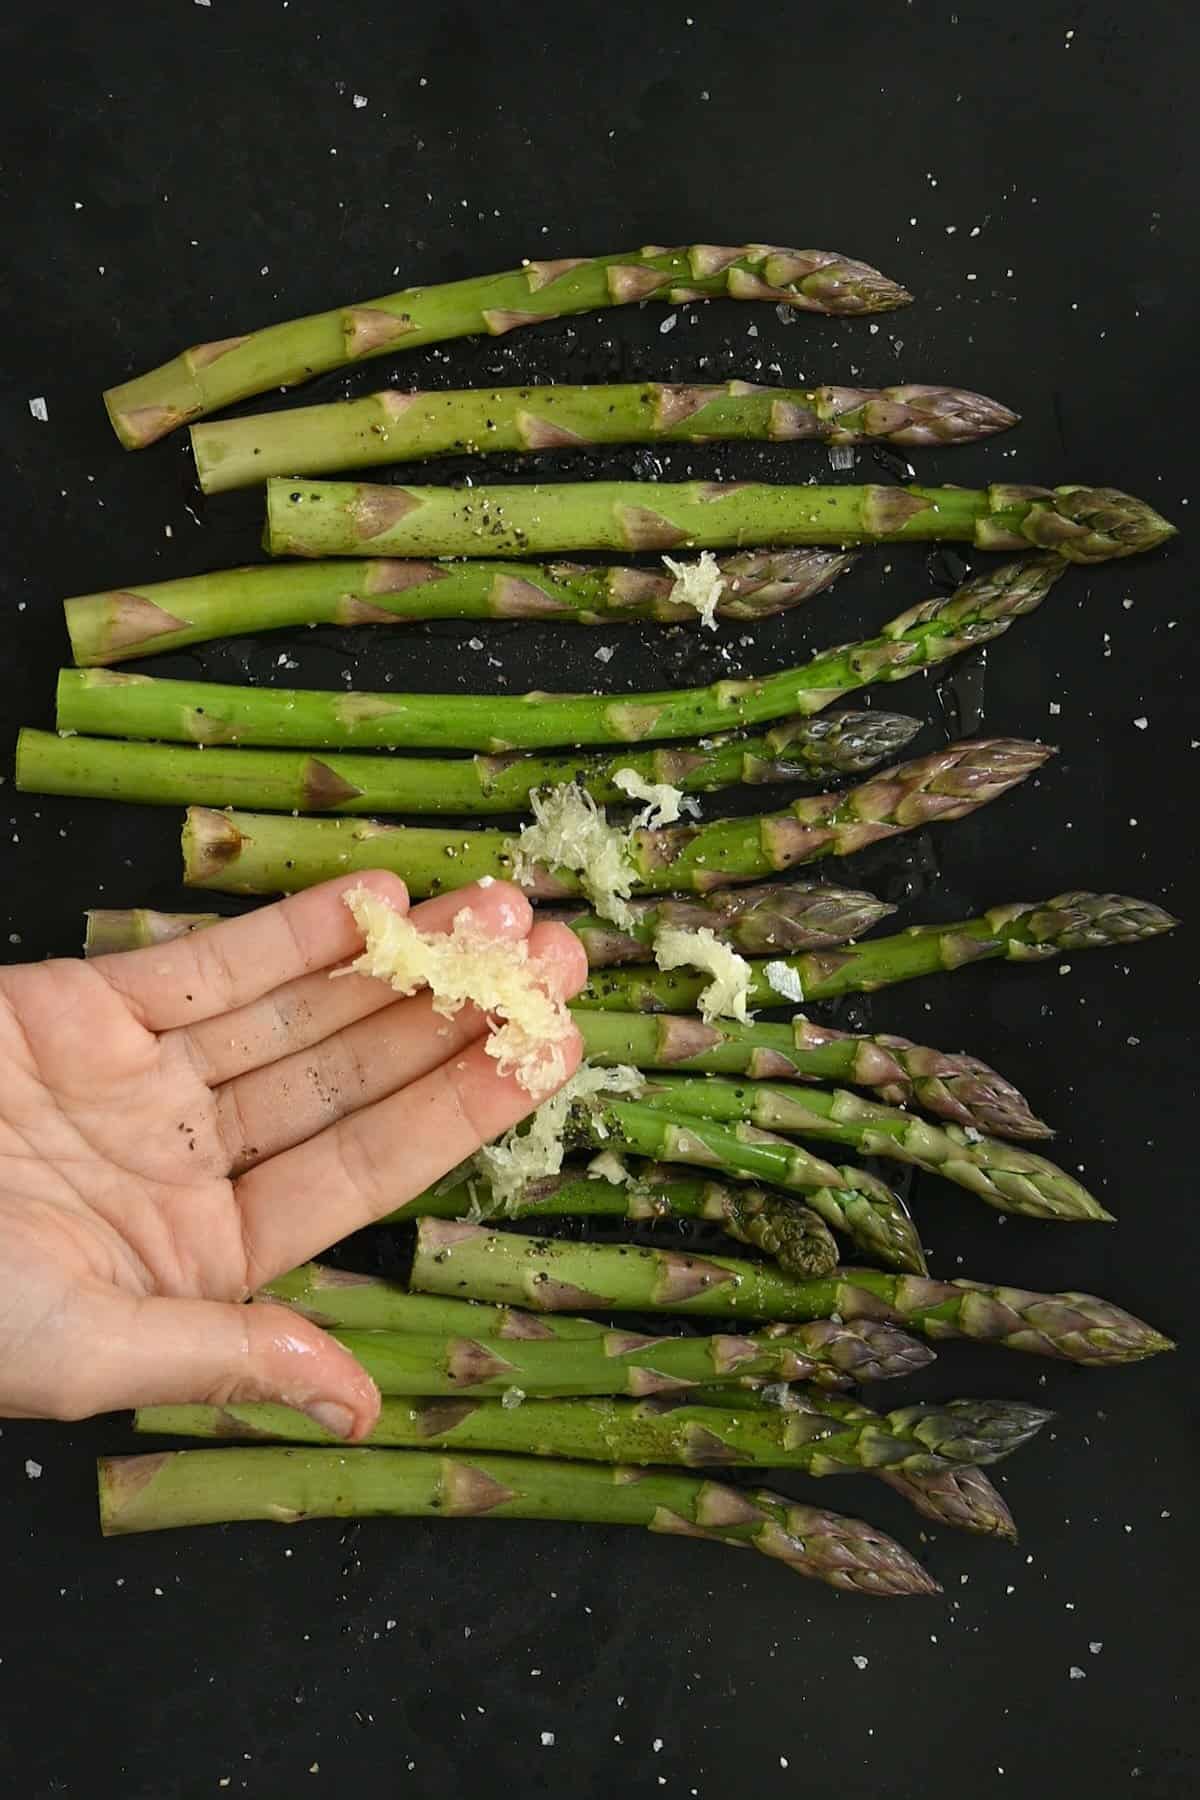 Seasoning asparagus before roasting it